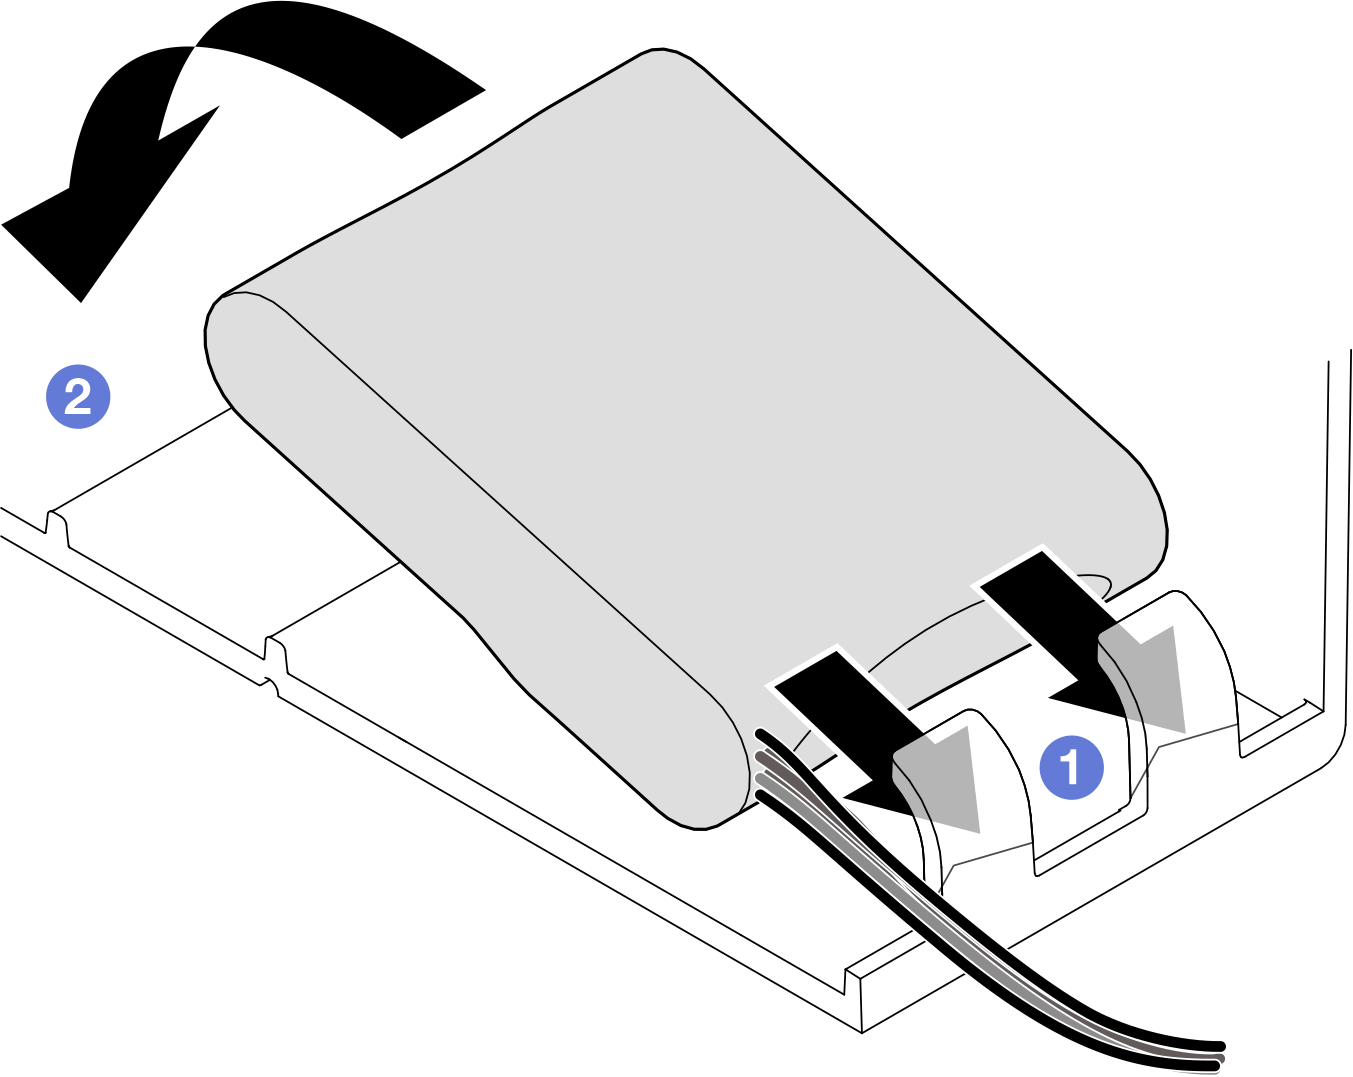 Flash power module installation